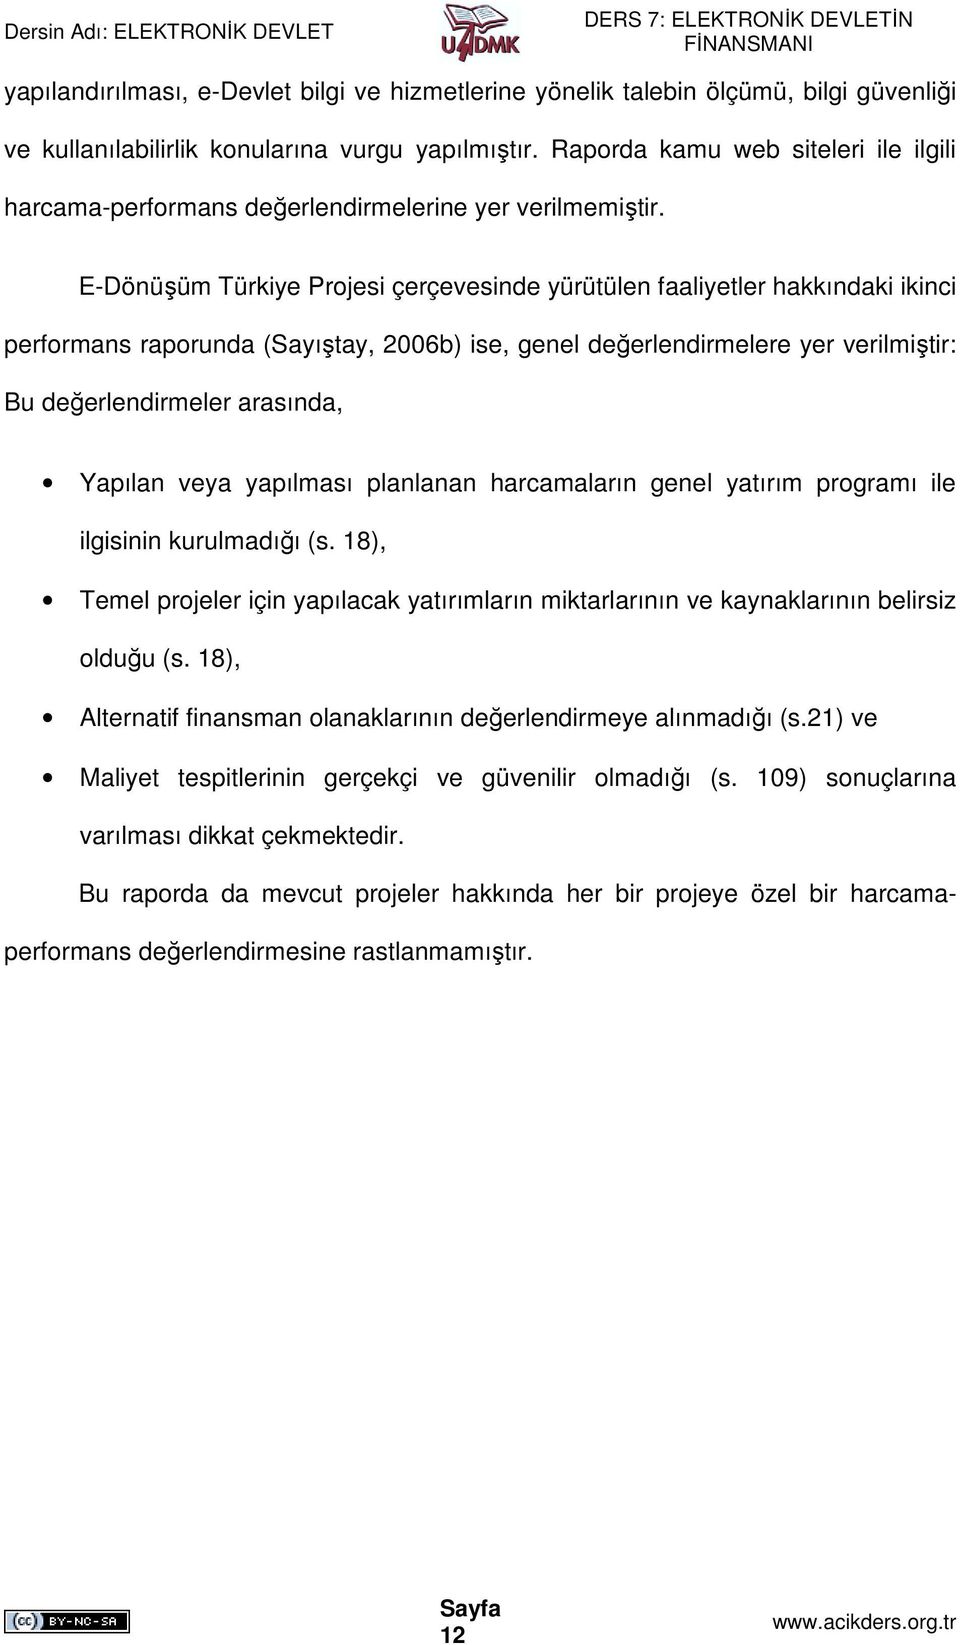 E-Dönüşüm Türkiye Projesi çerçevesinde yürütülen faaliyetler hakkındaki ikinci performans raporunda (Sayıştay, 2006b) ise, genel değerlendirmelere yer verilmiştir: Bu değerlendirmeler arasında,